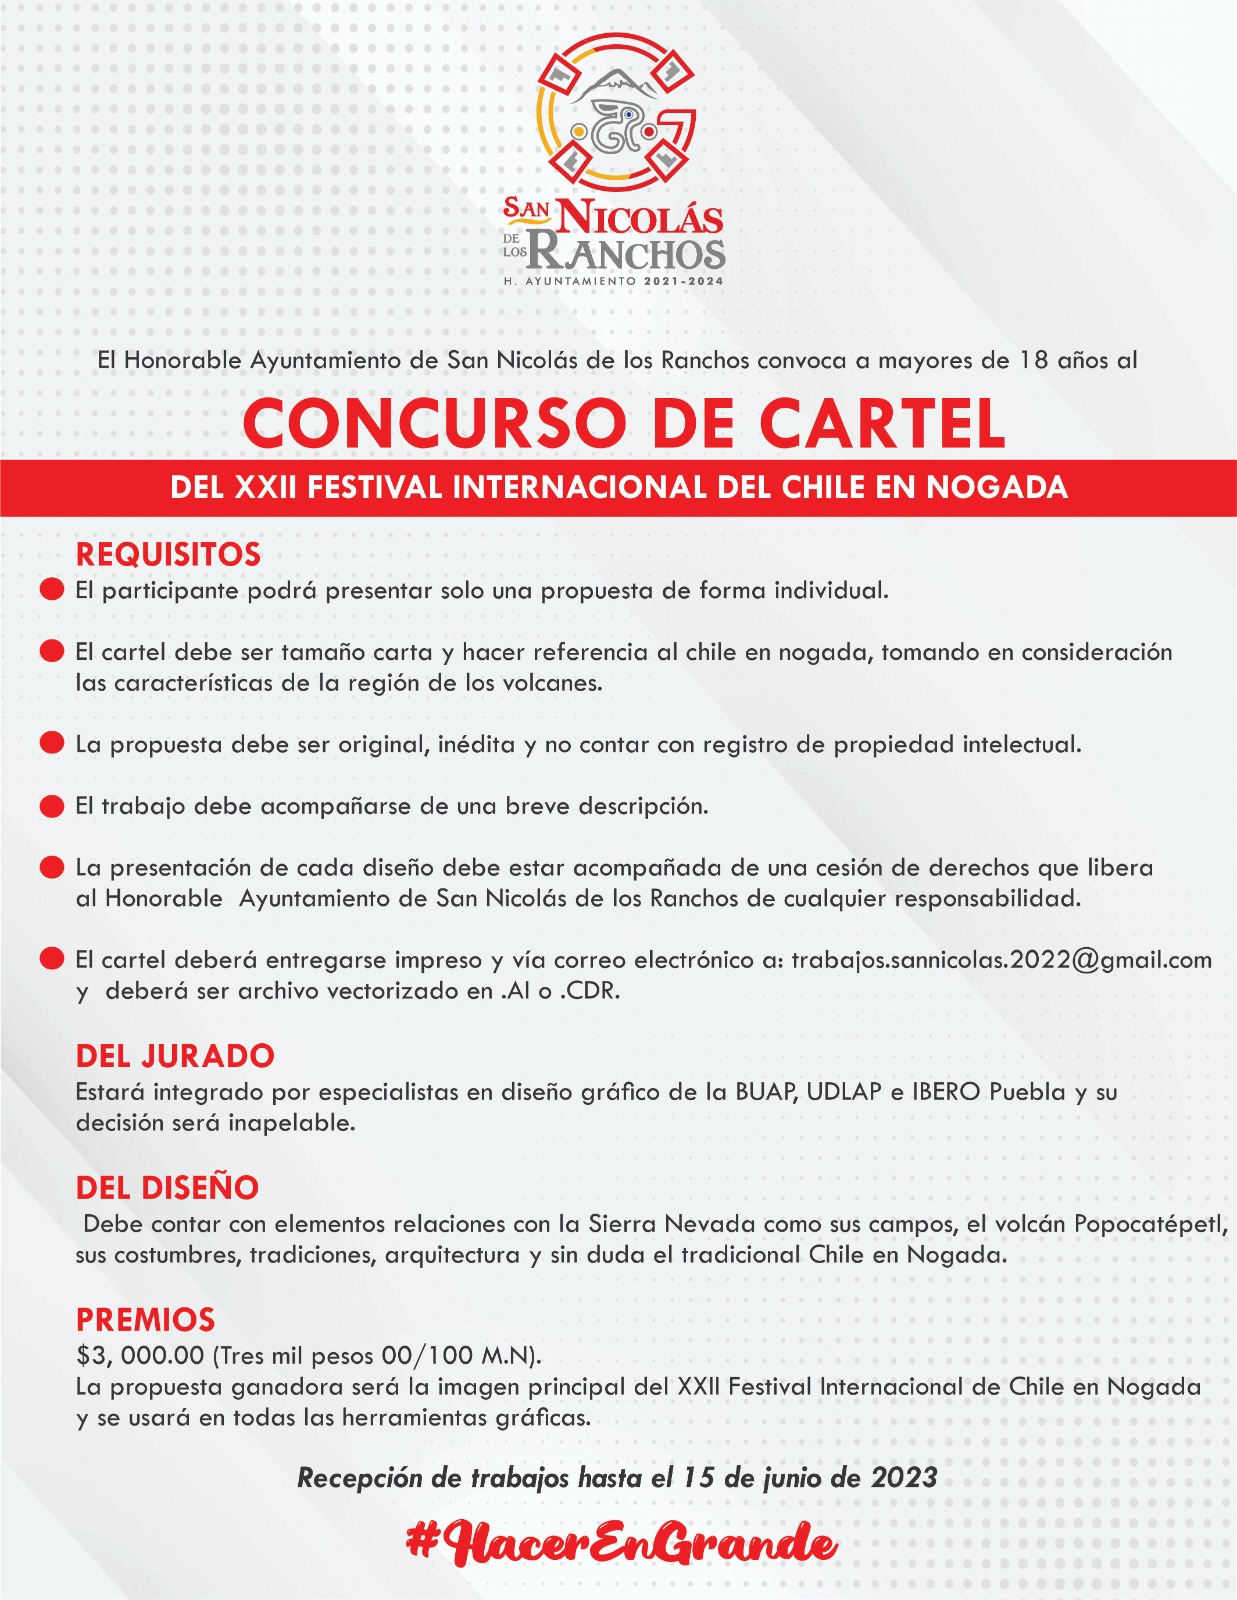 ¡Participa en el concurso de cartel de chile en nogada de San Nicolás de los Ranchos!